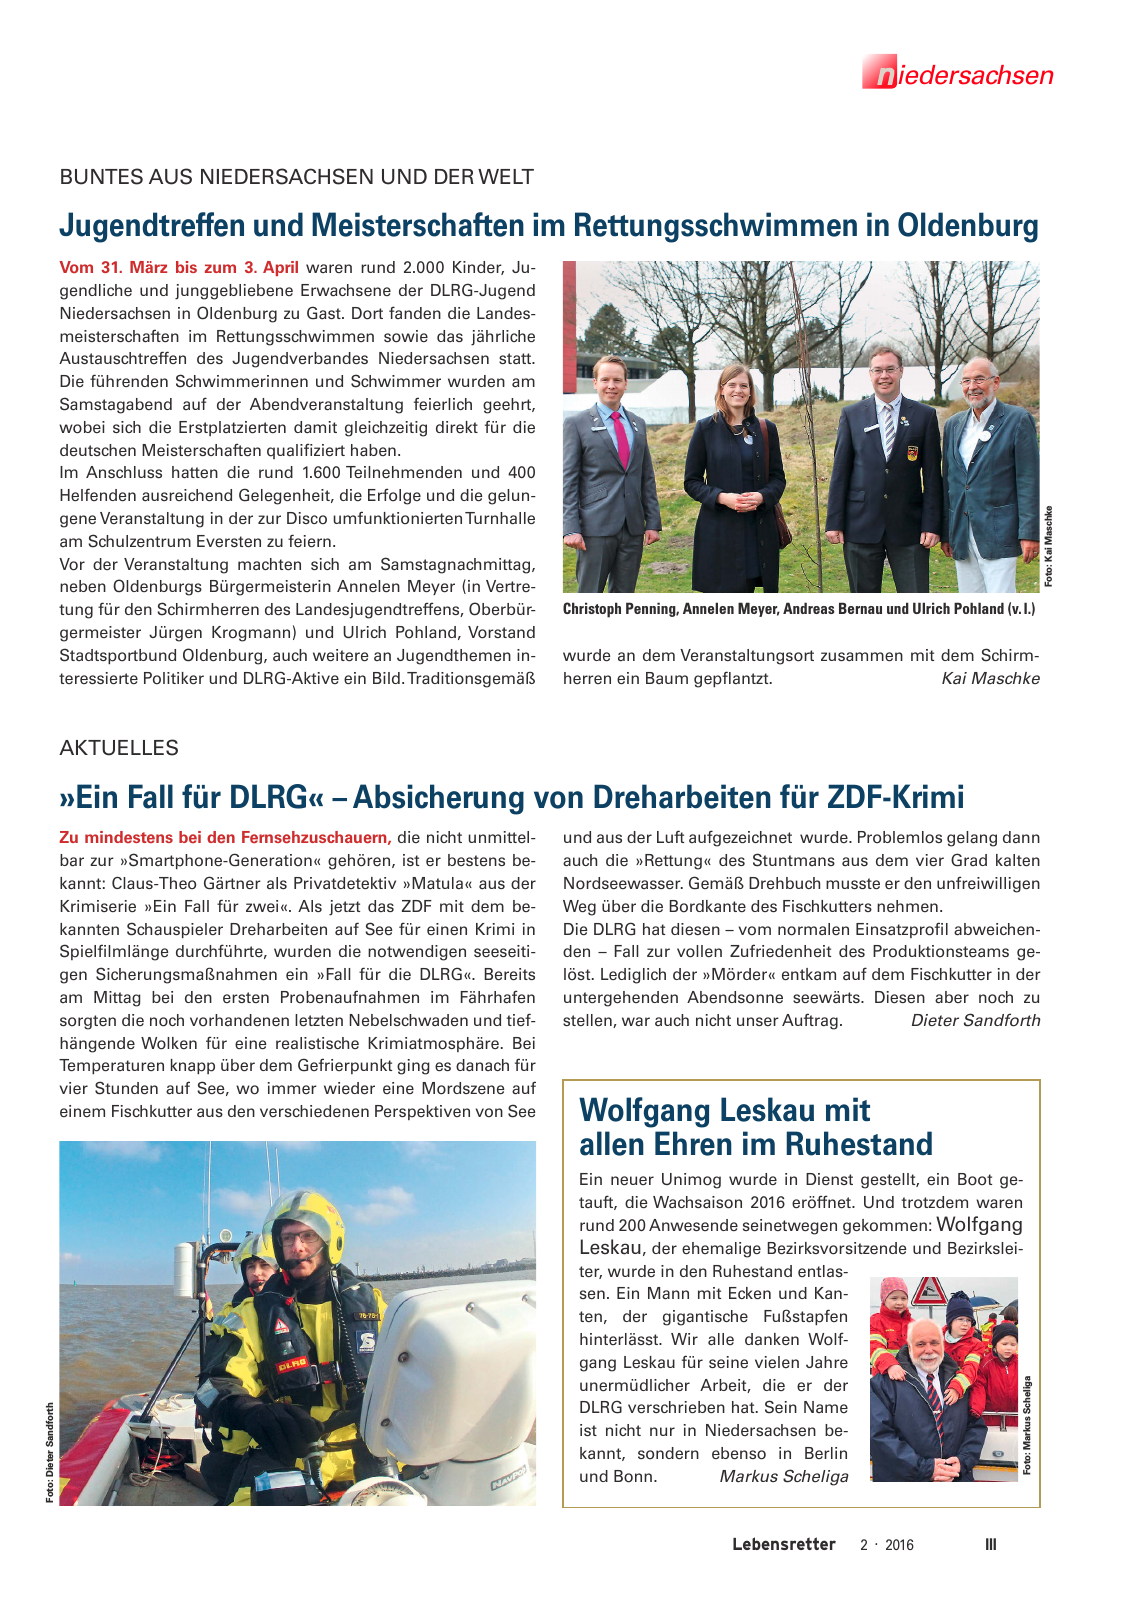 Vorschau Lebensretter 2/2016 - Regionalausgabe Niedersachsen Seite 5